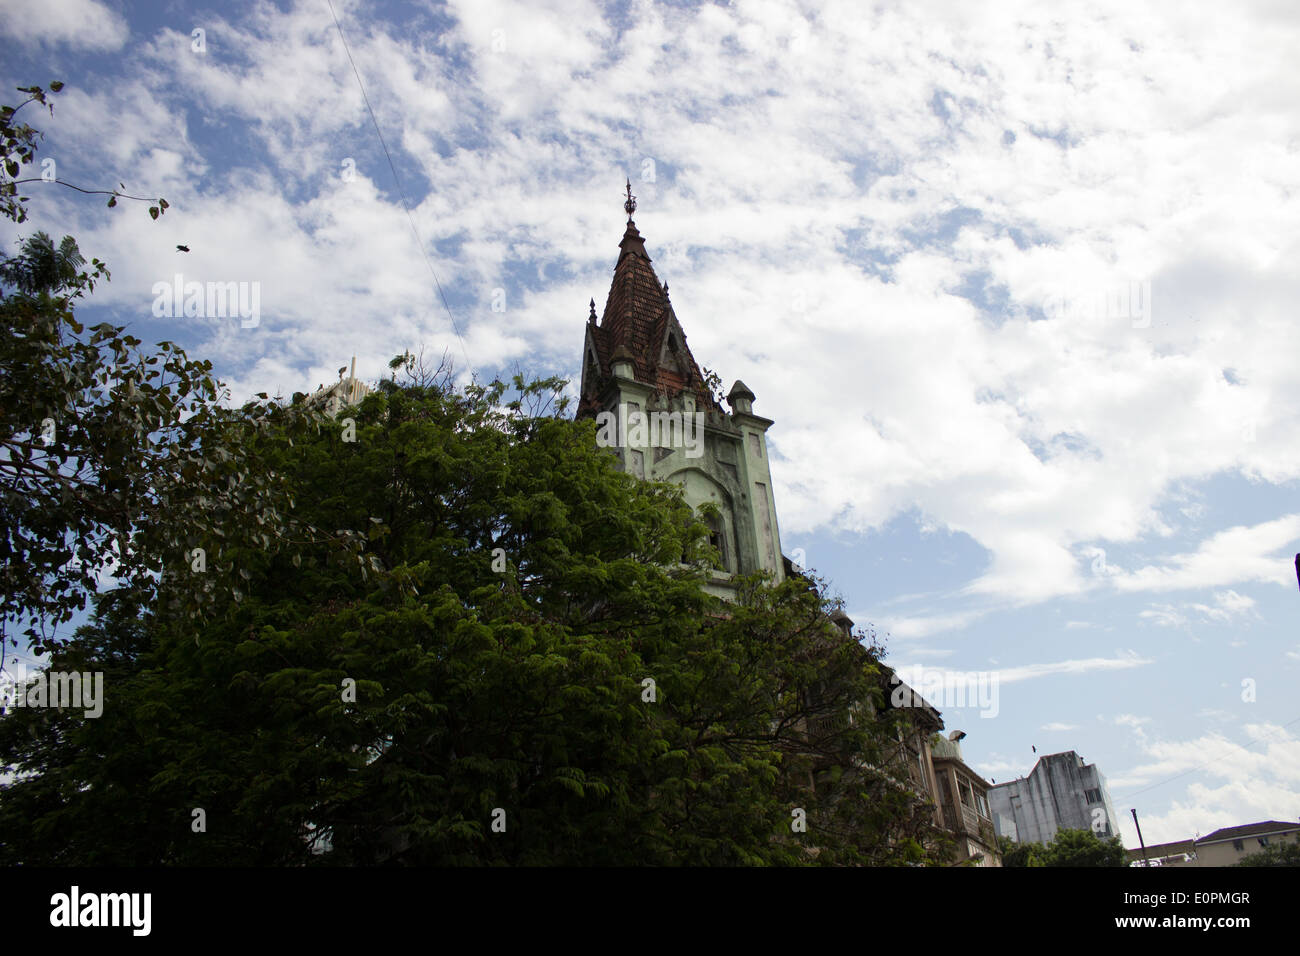 Le toit d'un immeuble du patrimoine de Colaba à Mumbai qui partage l'espace avec l'architecture moderne de la ville Banque D'Images